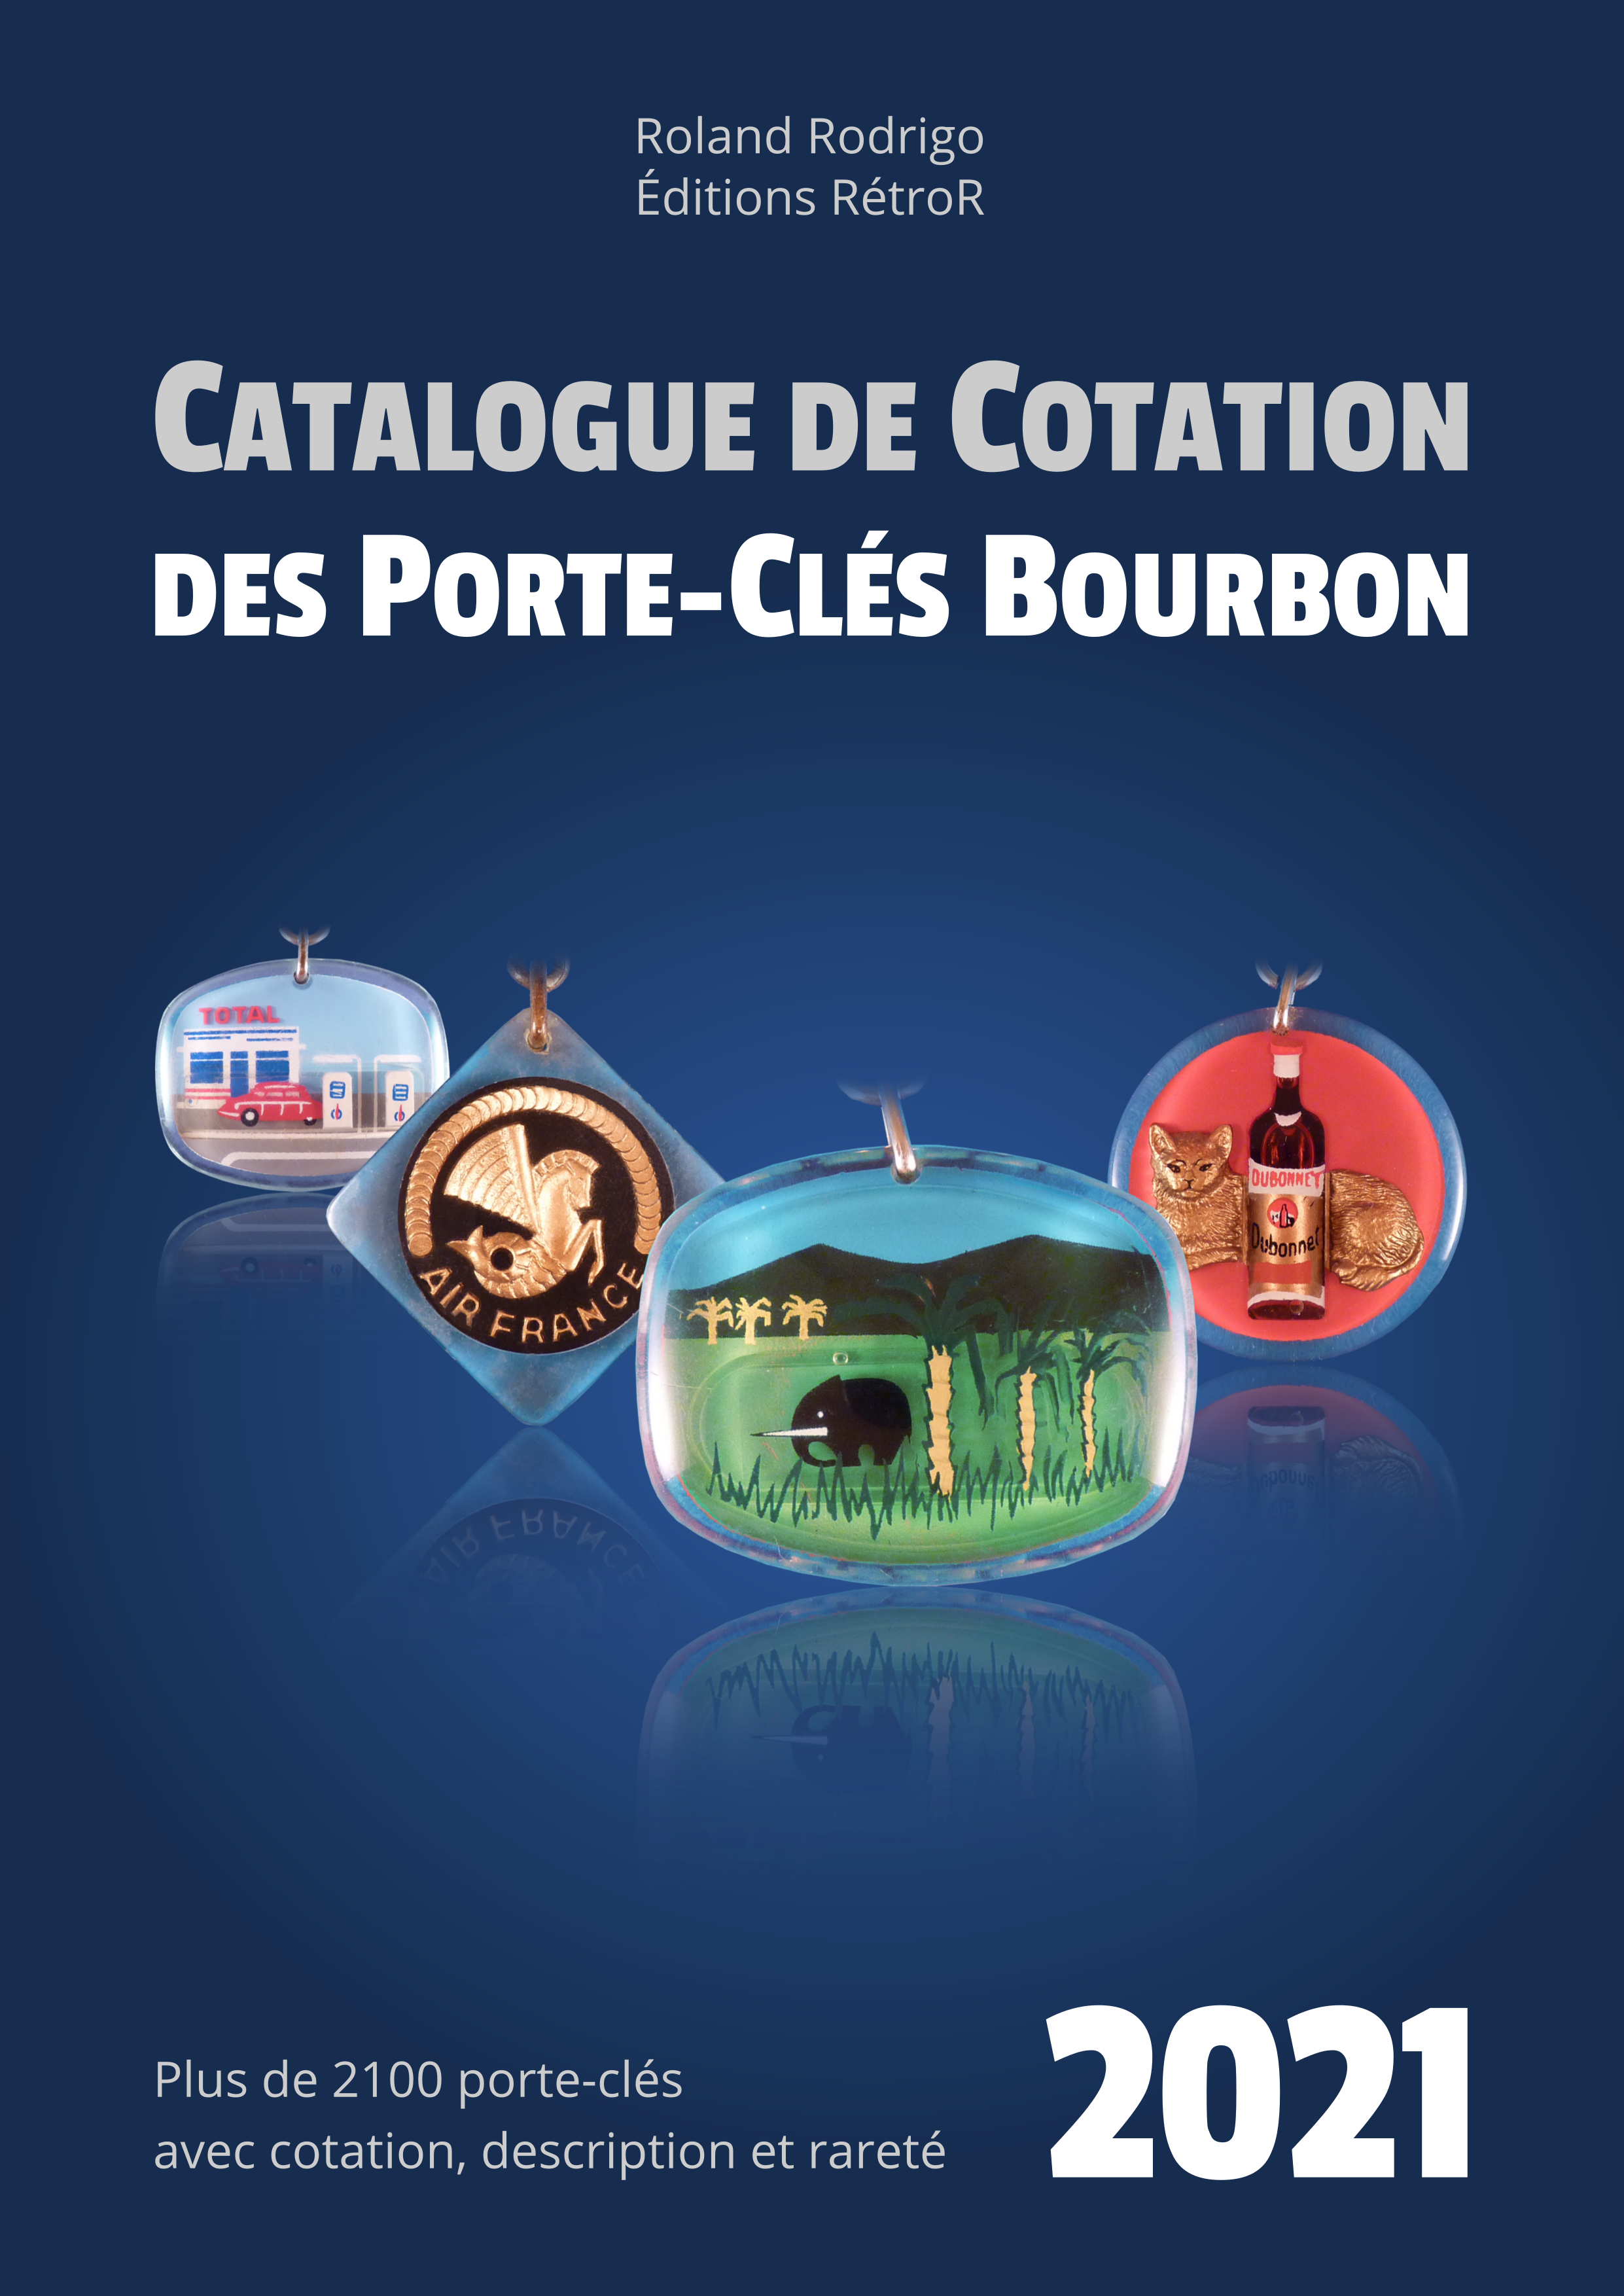 Cotation des porte-clés Bourbon 2021